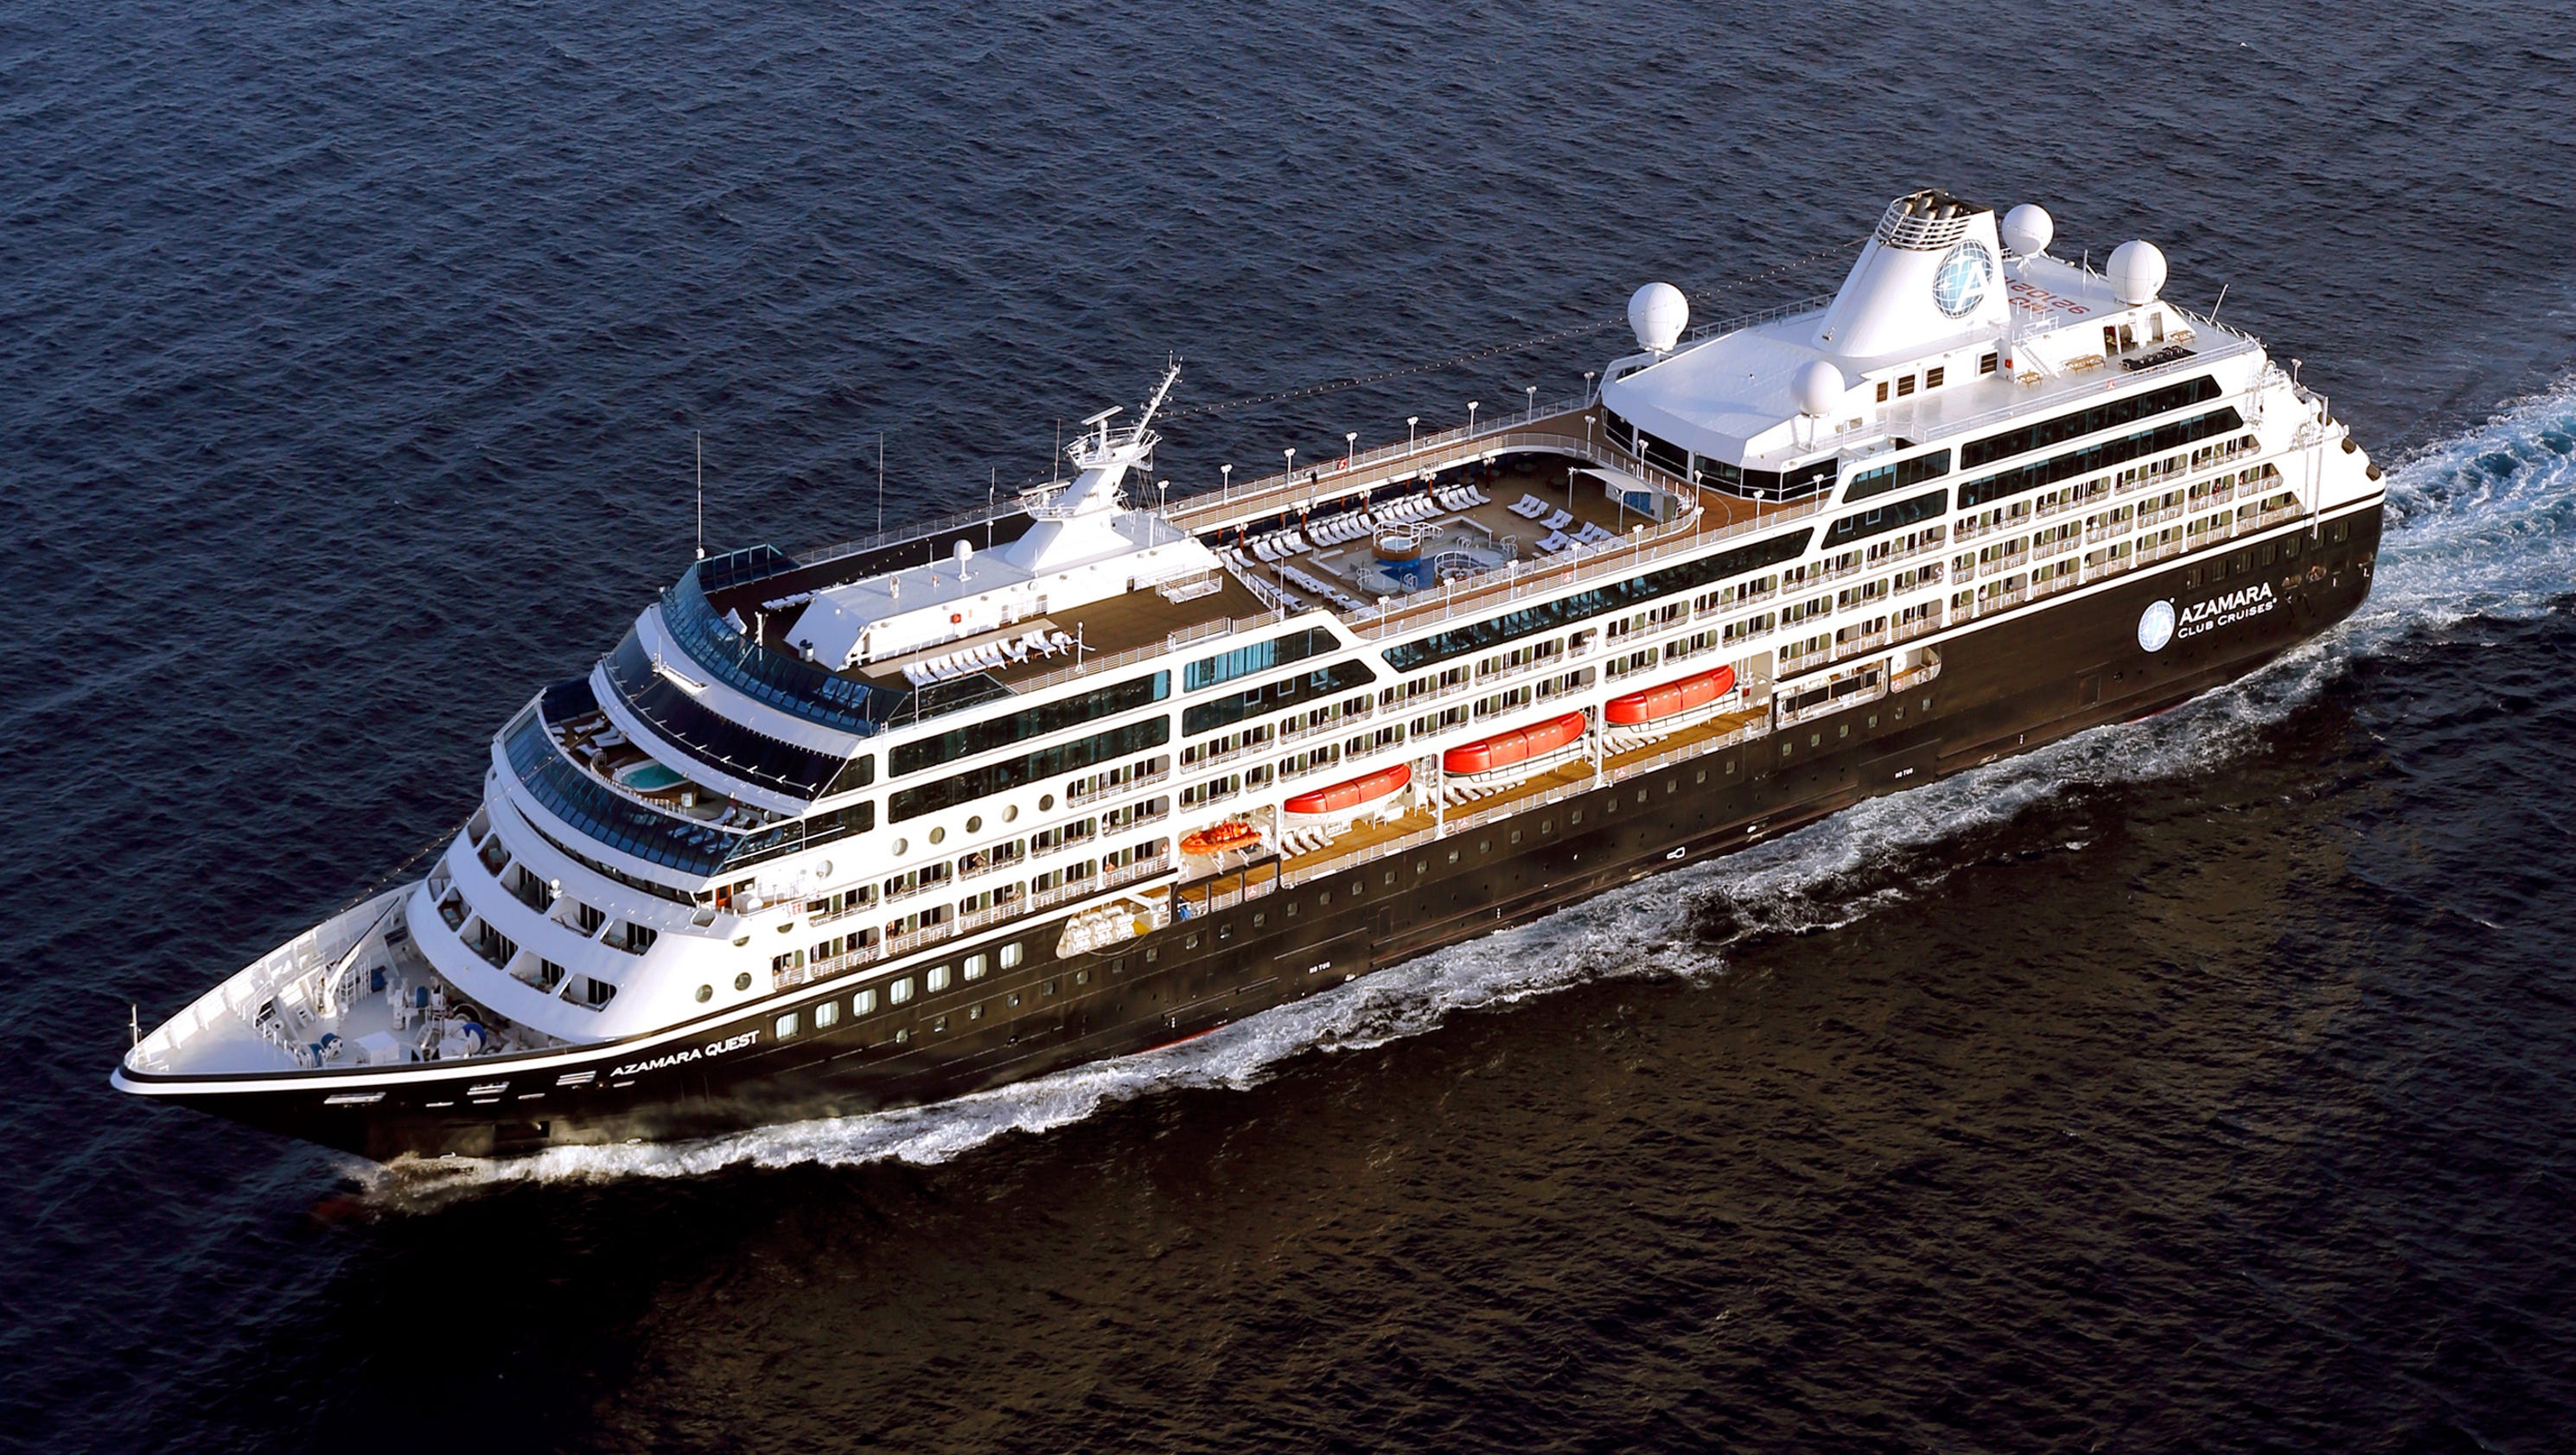 azamara cruise ships